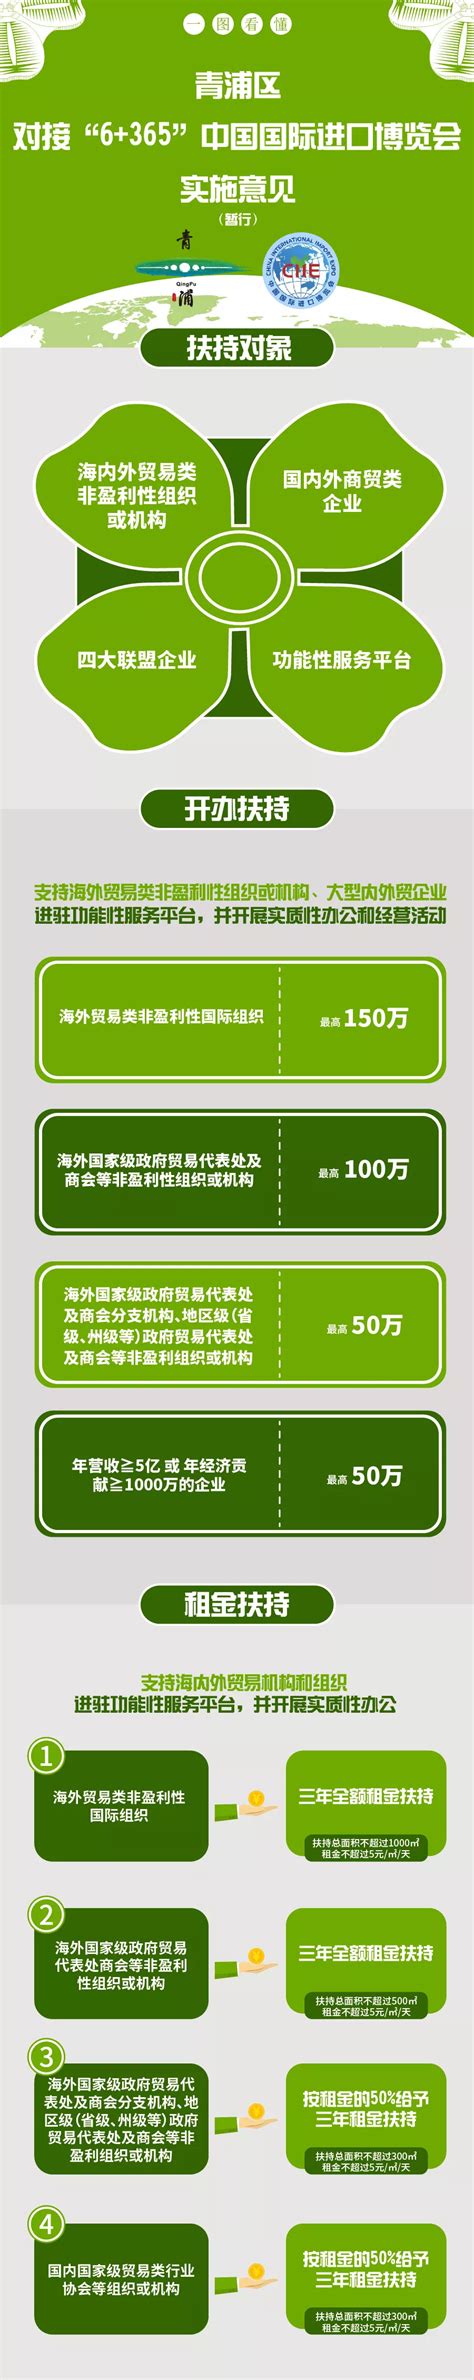 【进口博览会】一图读懂《青浦区对接“6+365”中国国际进口博览会实施意见》